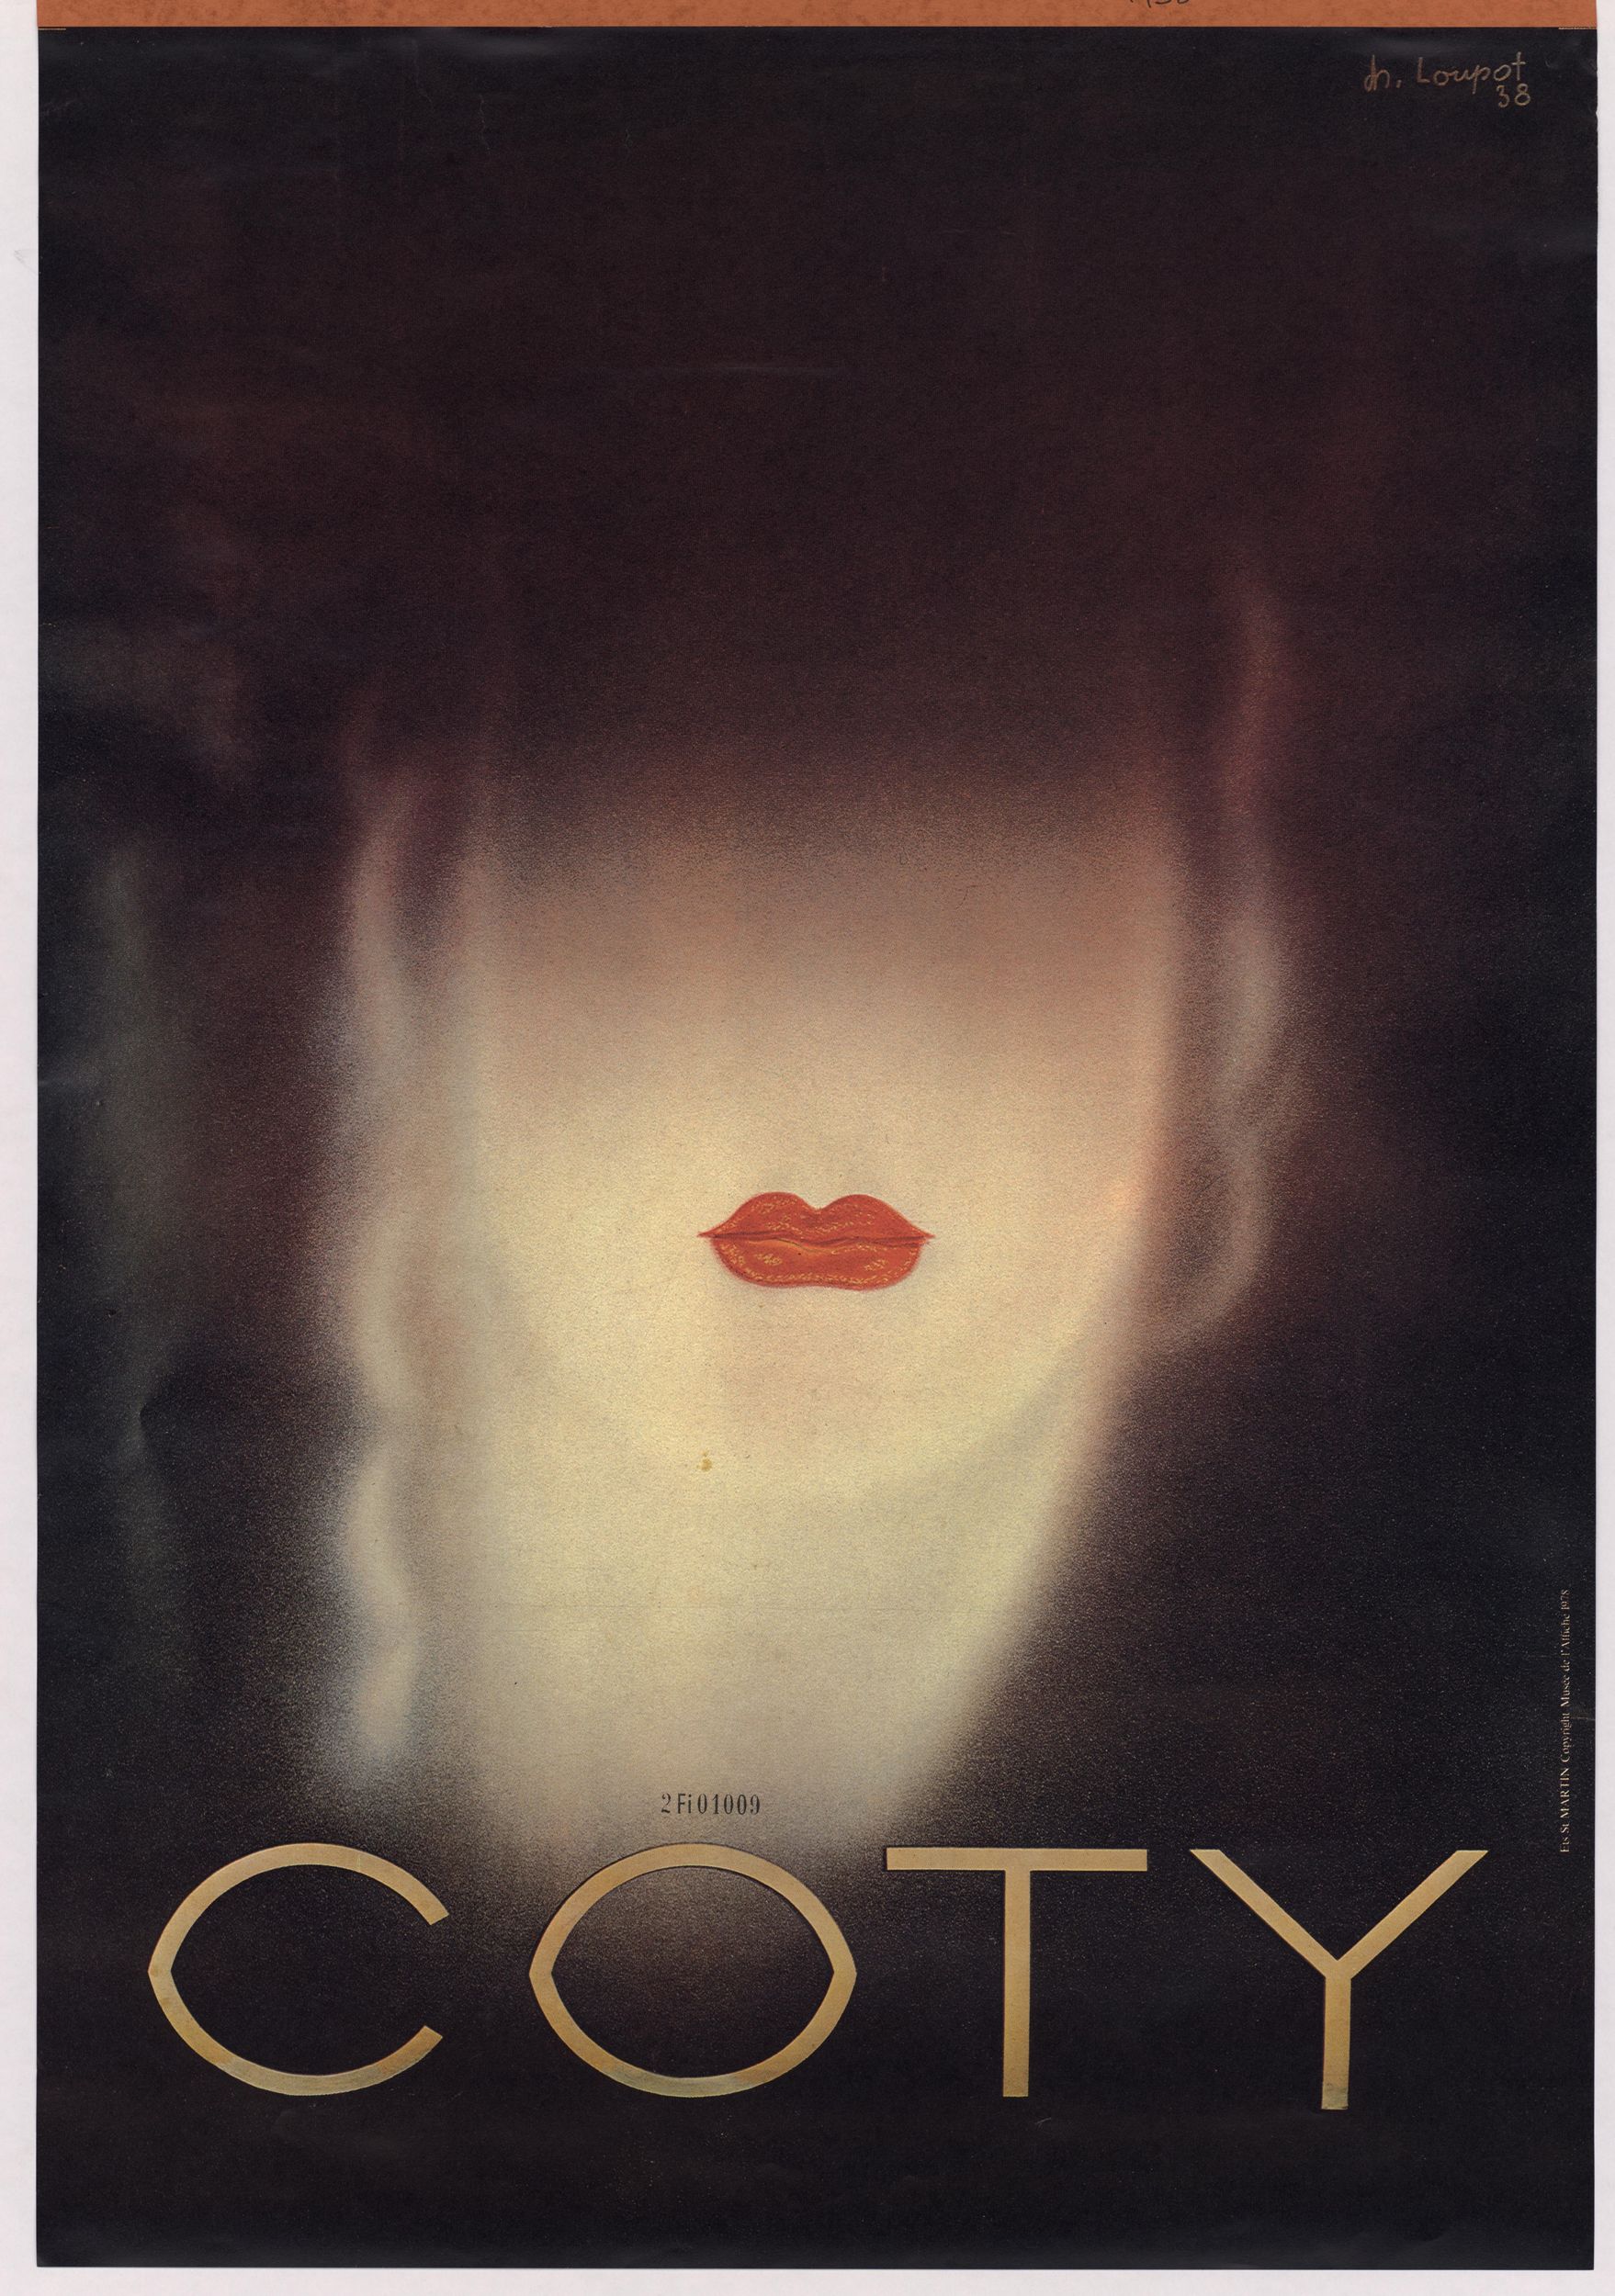 Coty - Produits de beauté : affiche publicitaire couleur (1938, cote : 2FI/1009)